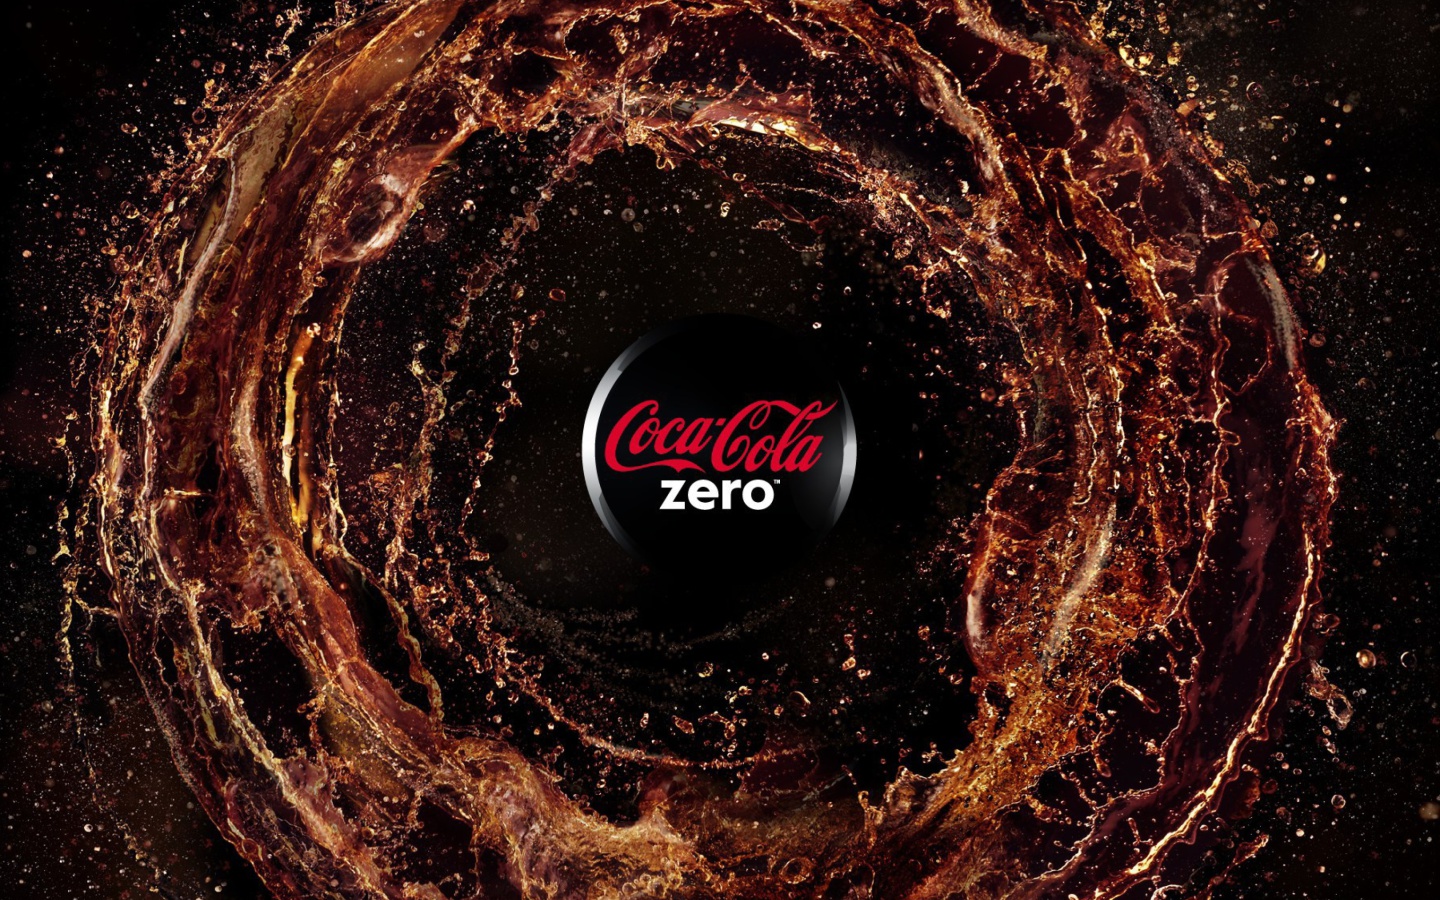 Sfondi Coca Cola Zero - Diet and Sugar Free 1440x900